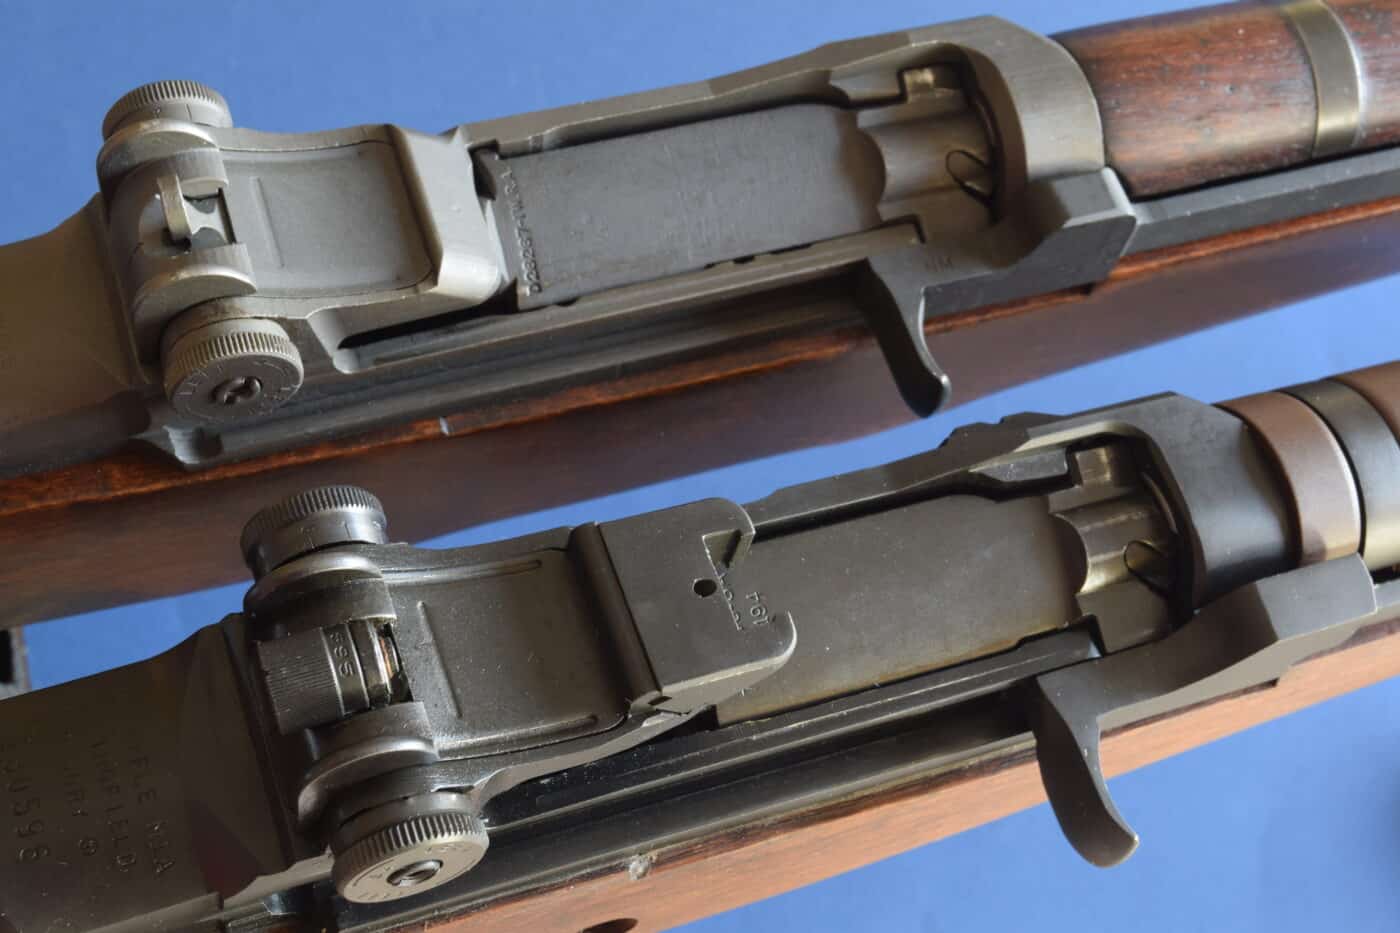 M1 vs M1A as semi auto hunting rifles